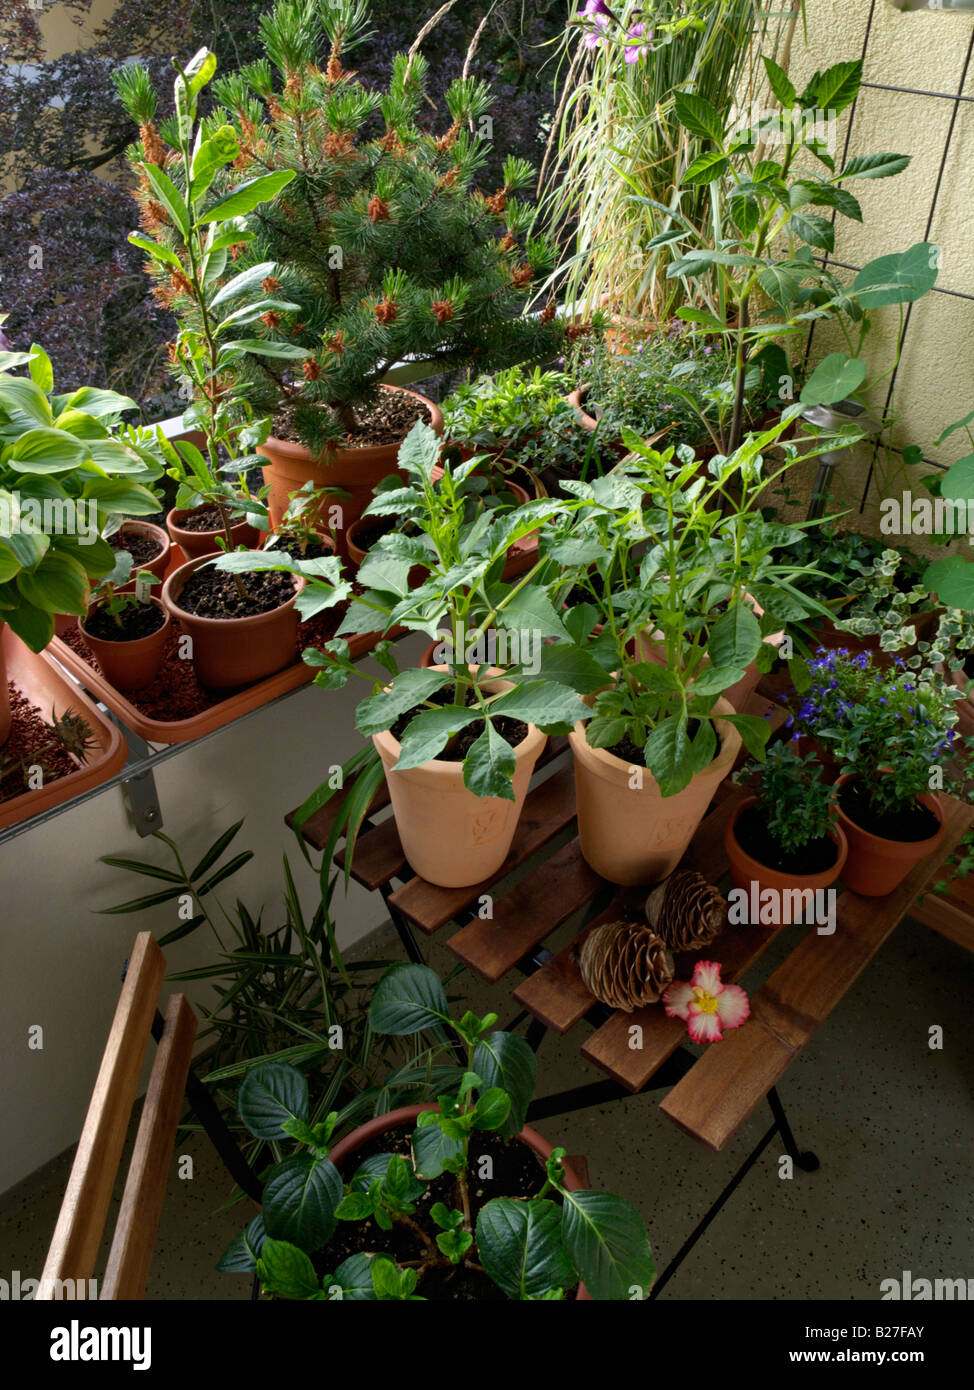 Balcon avec de nombreuses plantes en pot Banque D'Images